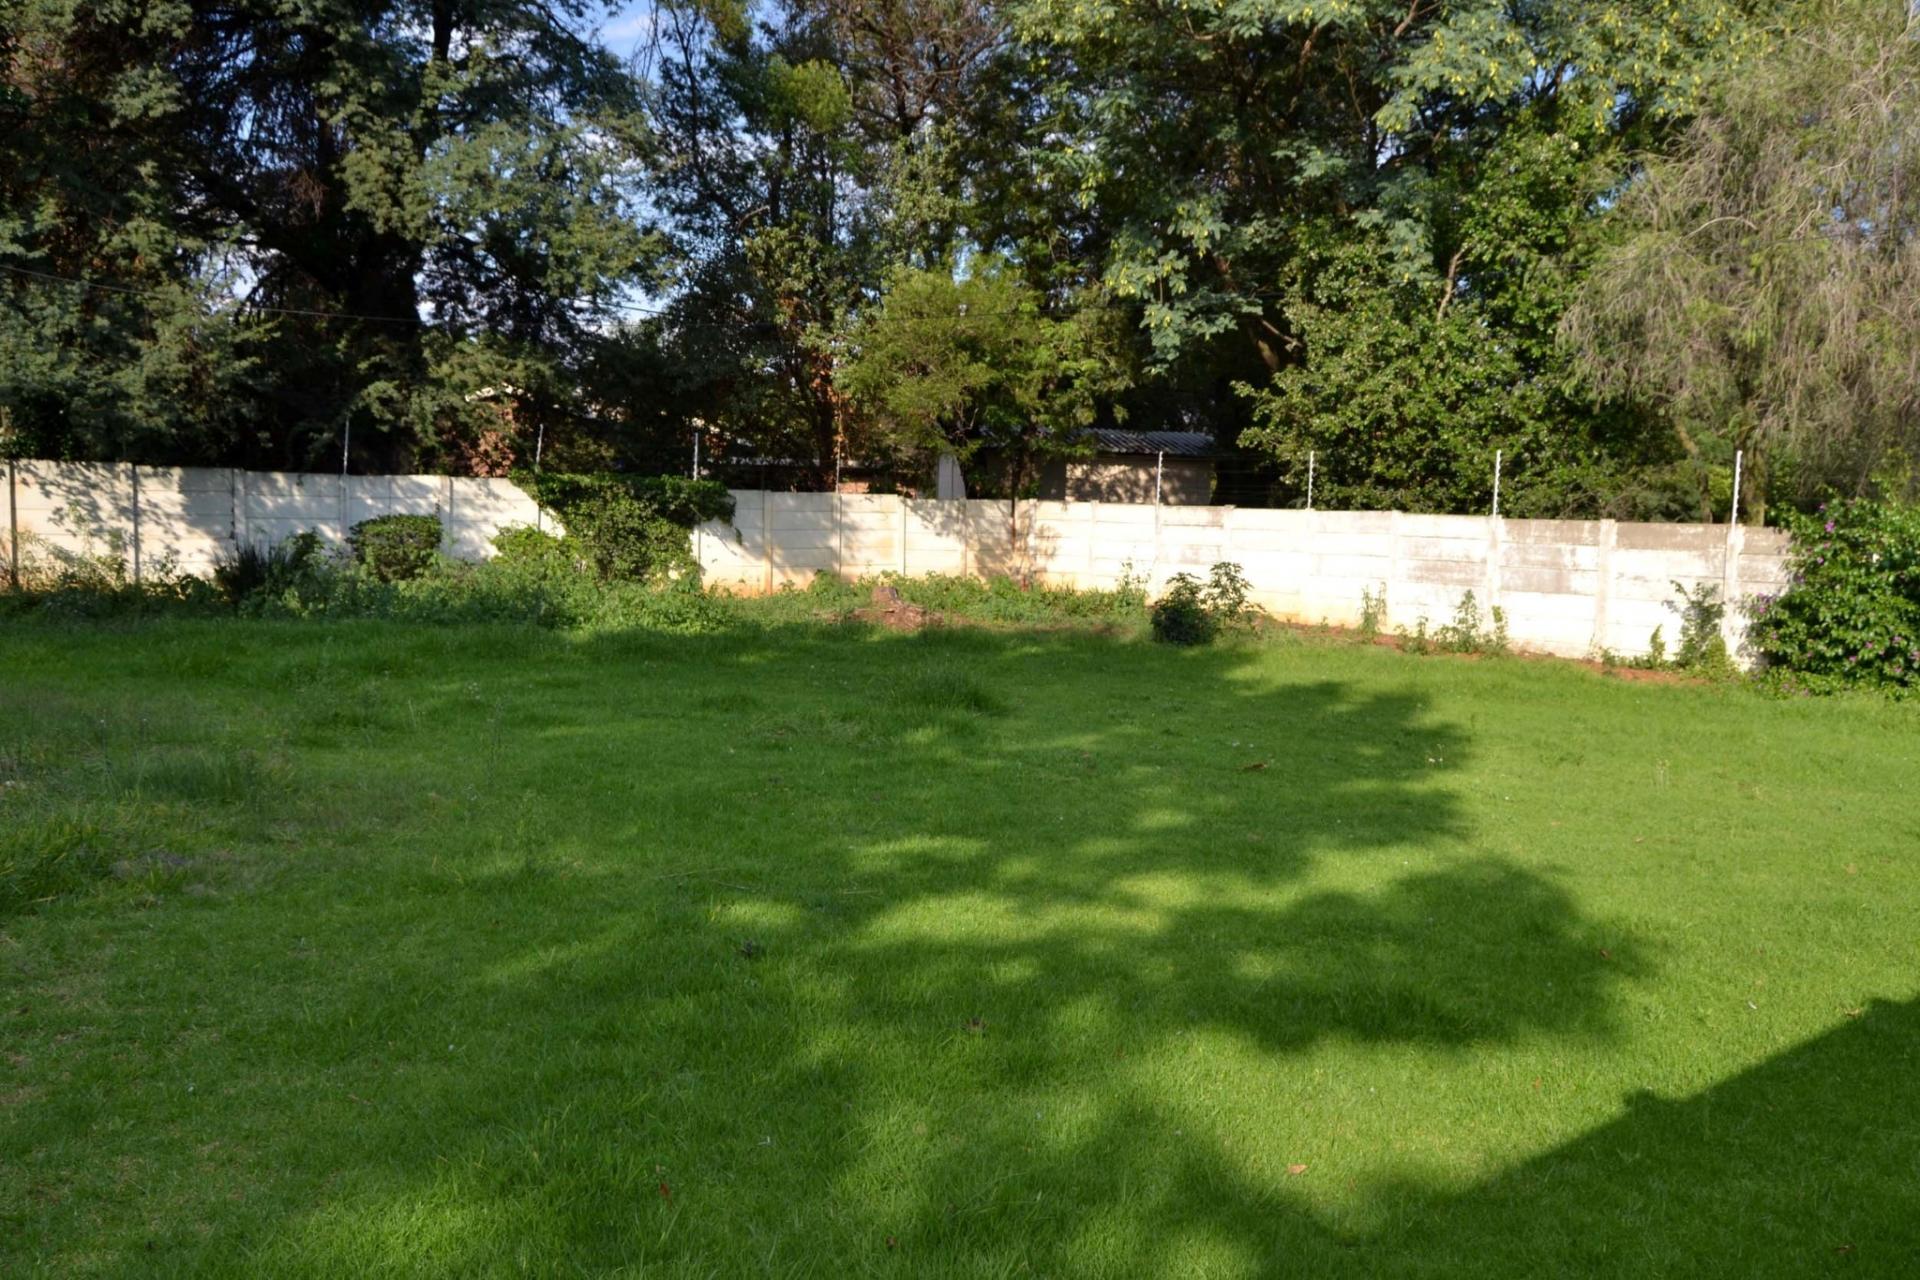 Backyard of property in Brackenhurst